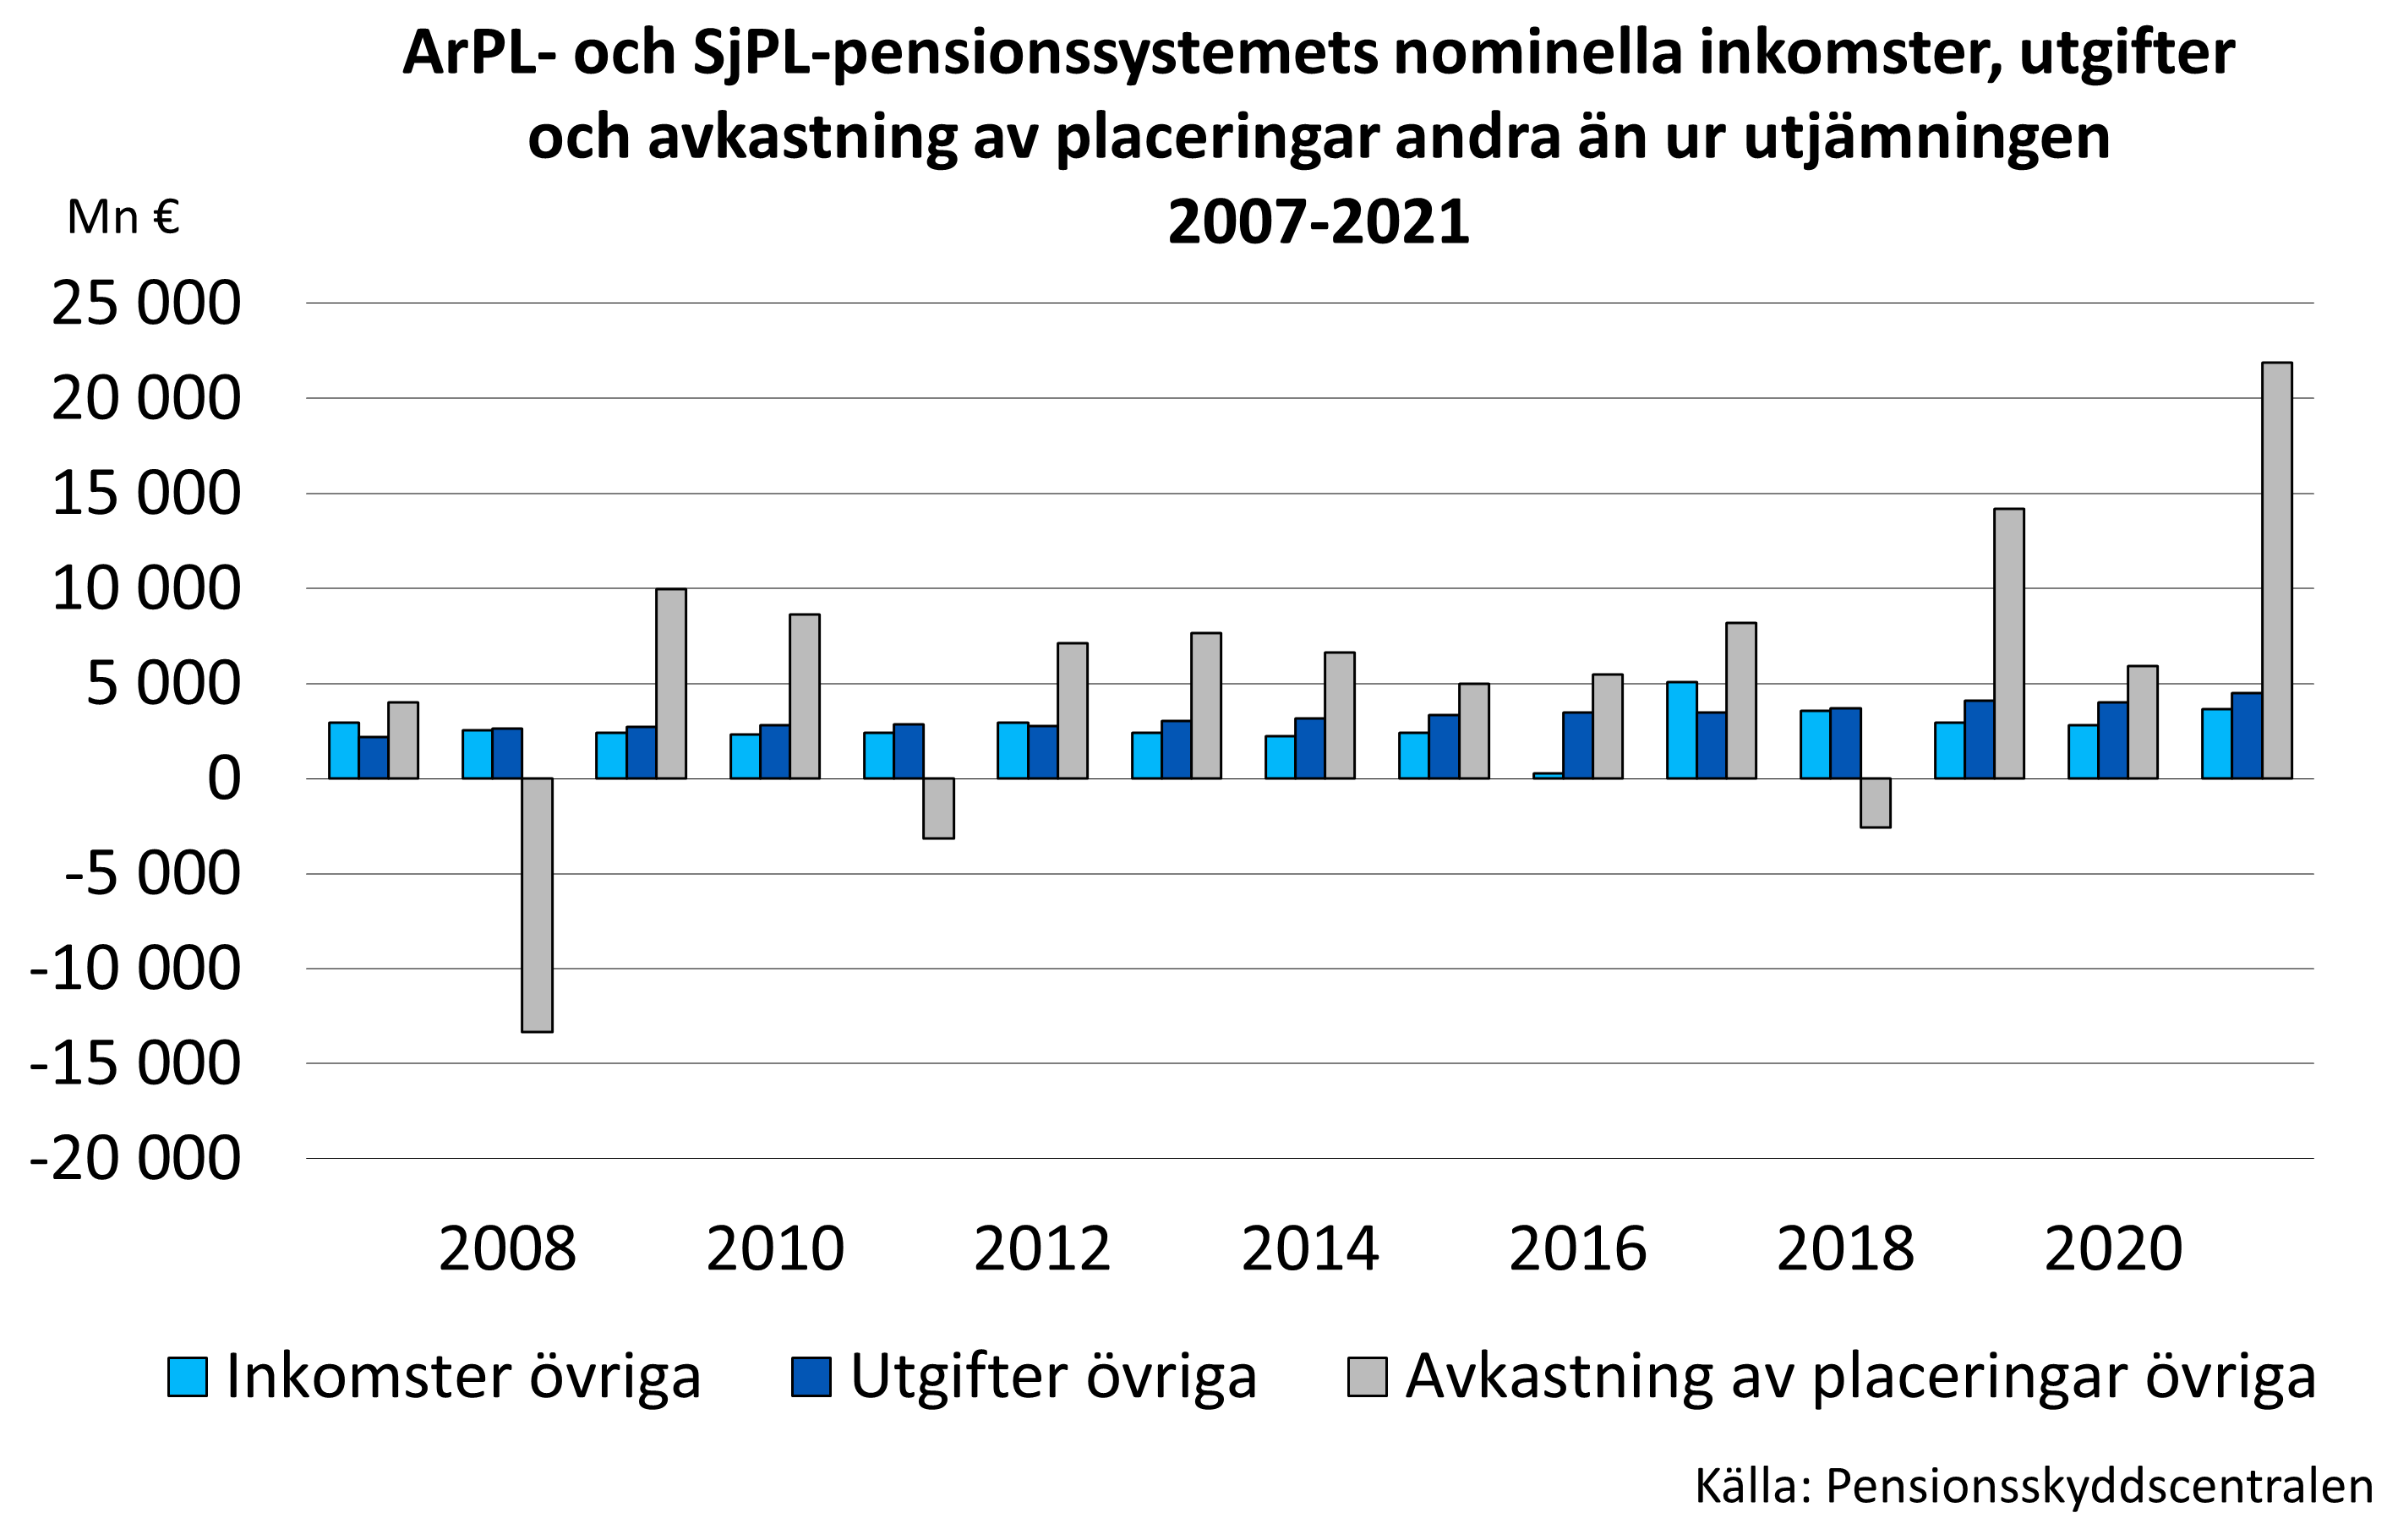 ArPL- och SjPL-pensionssystemets nominella inkomster, utgifter och avkastning av placeringar andra än ur utjämningen 2007-2020